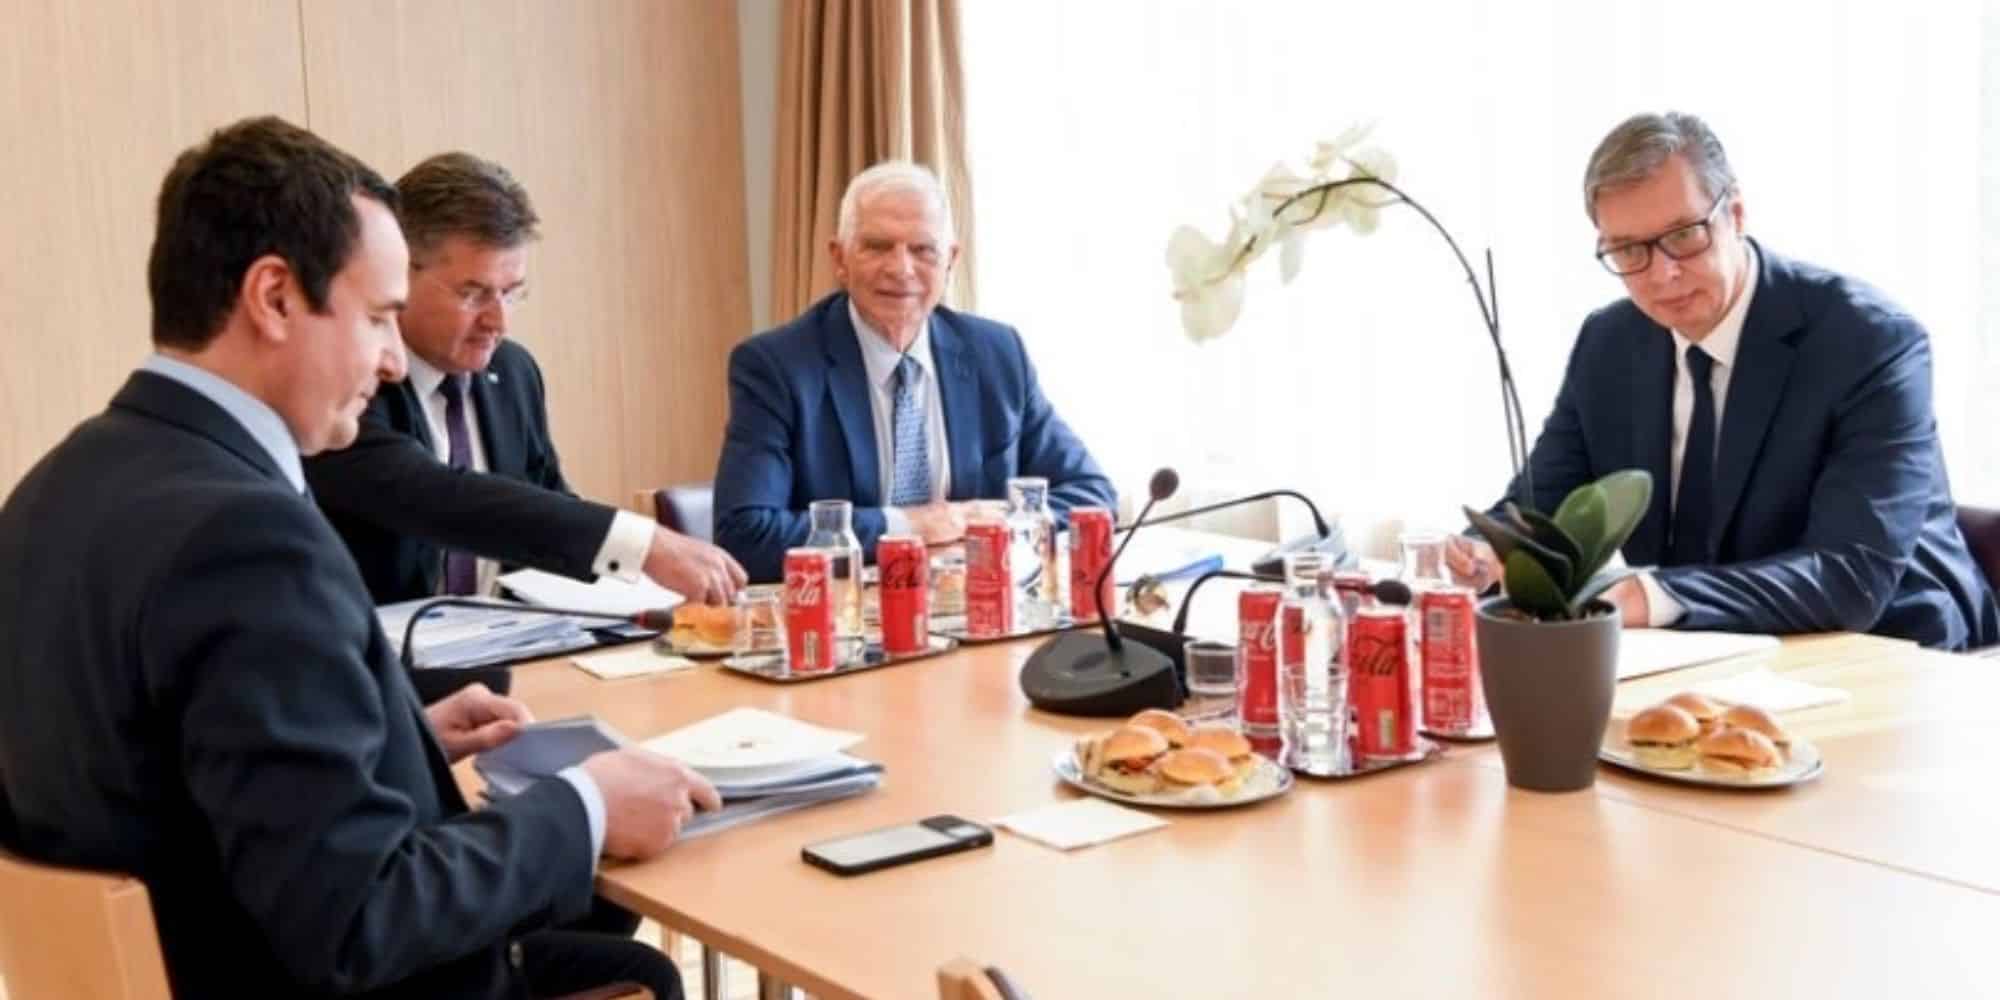 Εικόνα από τη συνάντηση του Μπορέλ με τον σέρβο πρόεδρο Αλεξάνταρ Βούτσιτς και τον πρωθυπουργό του Κοσόβου Αλμπίν Κούρτι